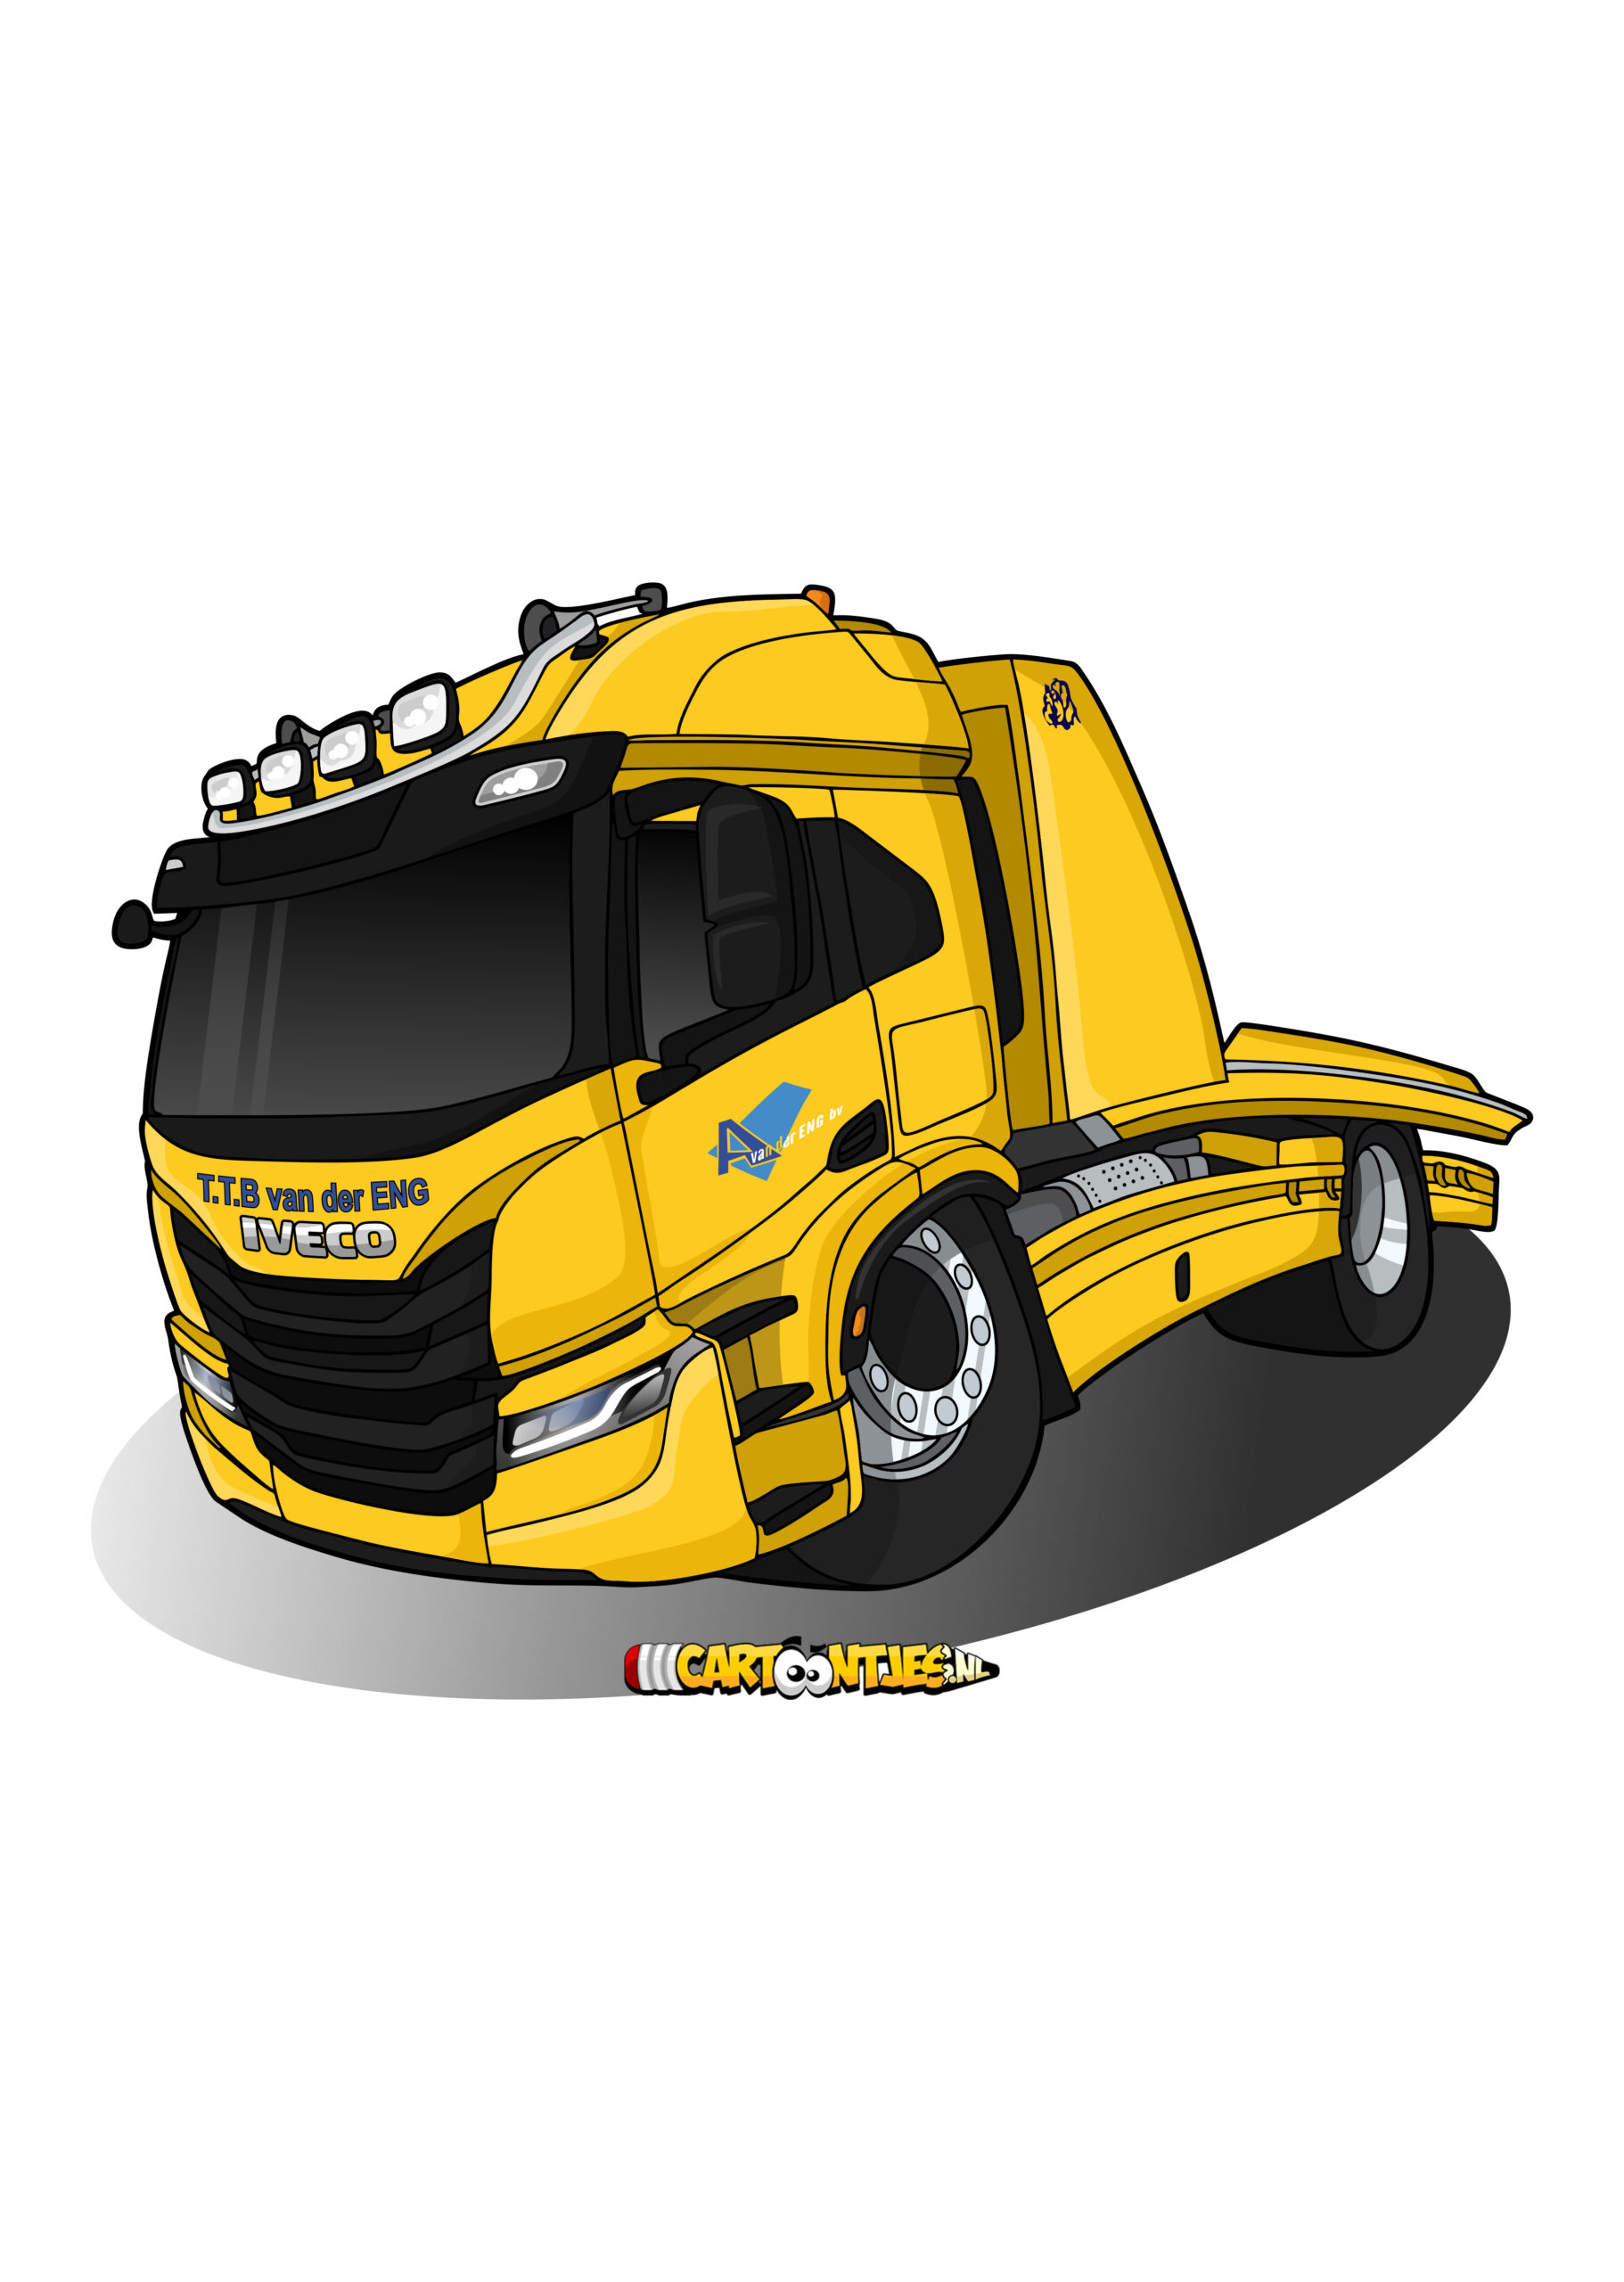 truck-cartoon-van-der-eng